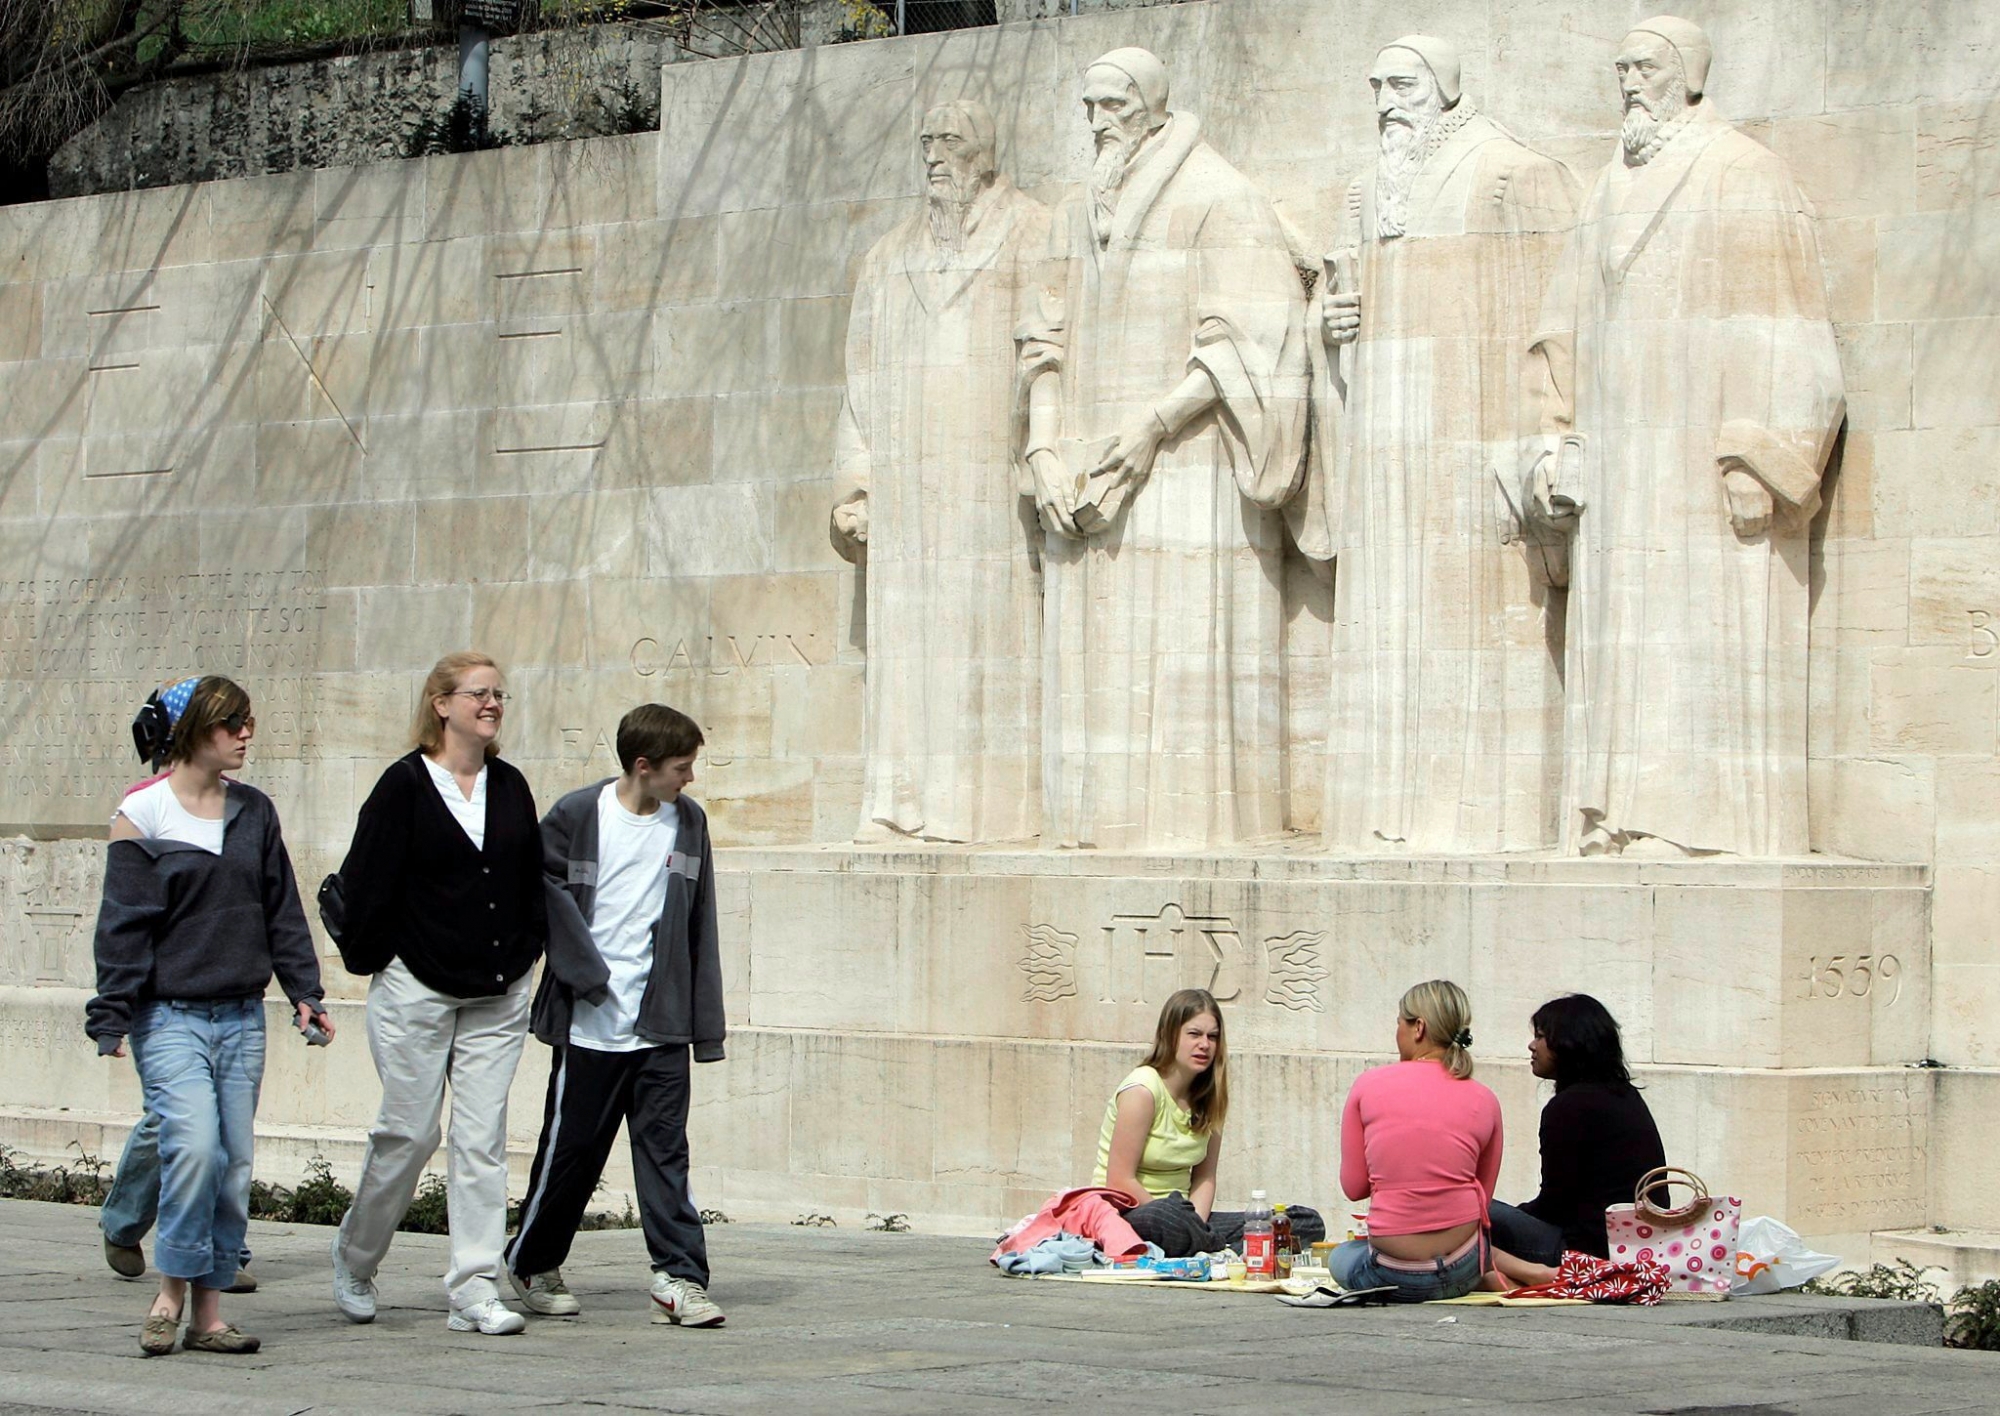 Des touristes pique-niquent tandis que díautres se promenent devant le mur des reformateurs a Geneve, ce lundi 28 mars 2005. (KEYSTONE/Martial Trezzini)
 SUISSE TOURISME MUR REFORMATEURS